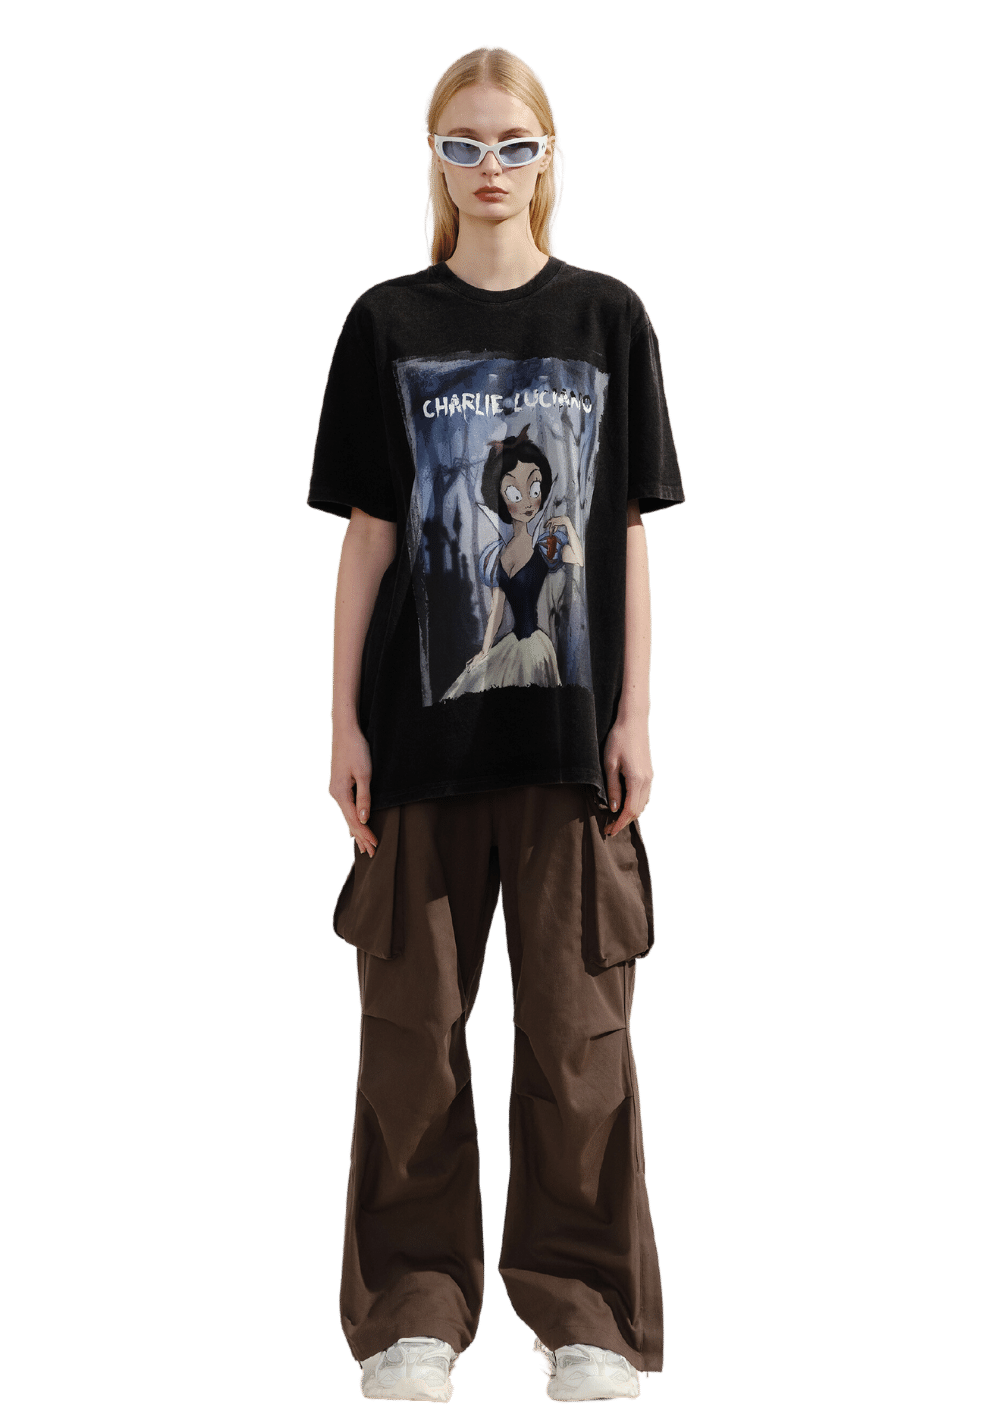 'Snow White' Print Vintage T-Shirt - PSYLOS 1, 'Snow White' Print Vintage T-Shirt, T-Shirt, Charlie Luciano, PSYLOS 1